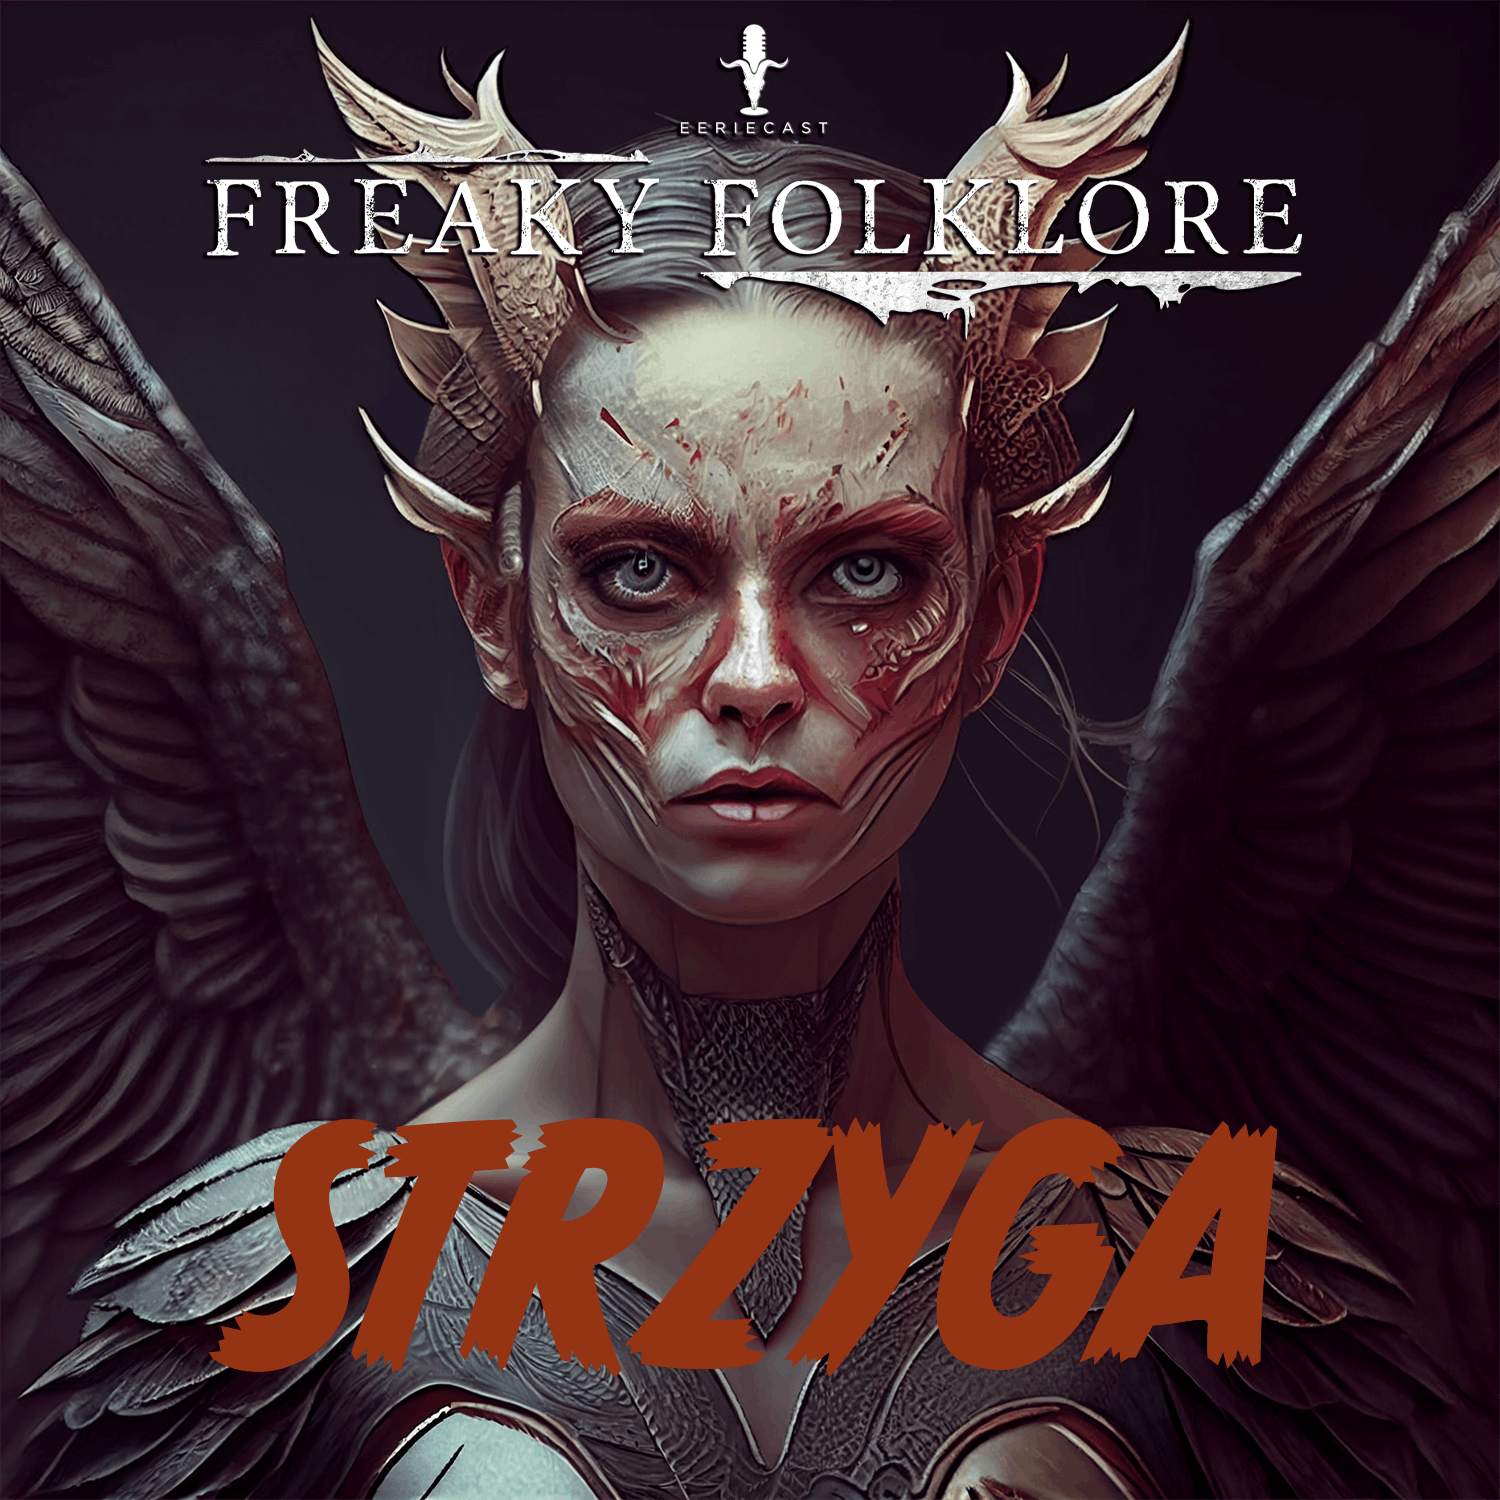 Strzyga – A Vampiric Demon from Slavic Folklore